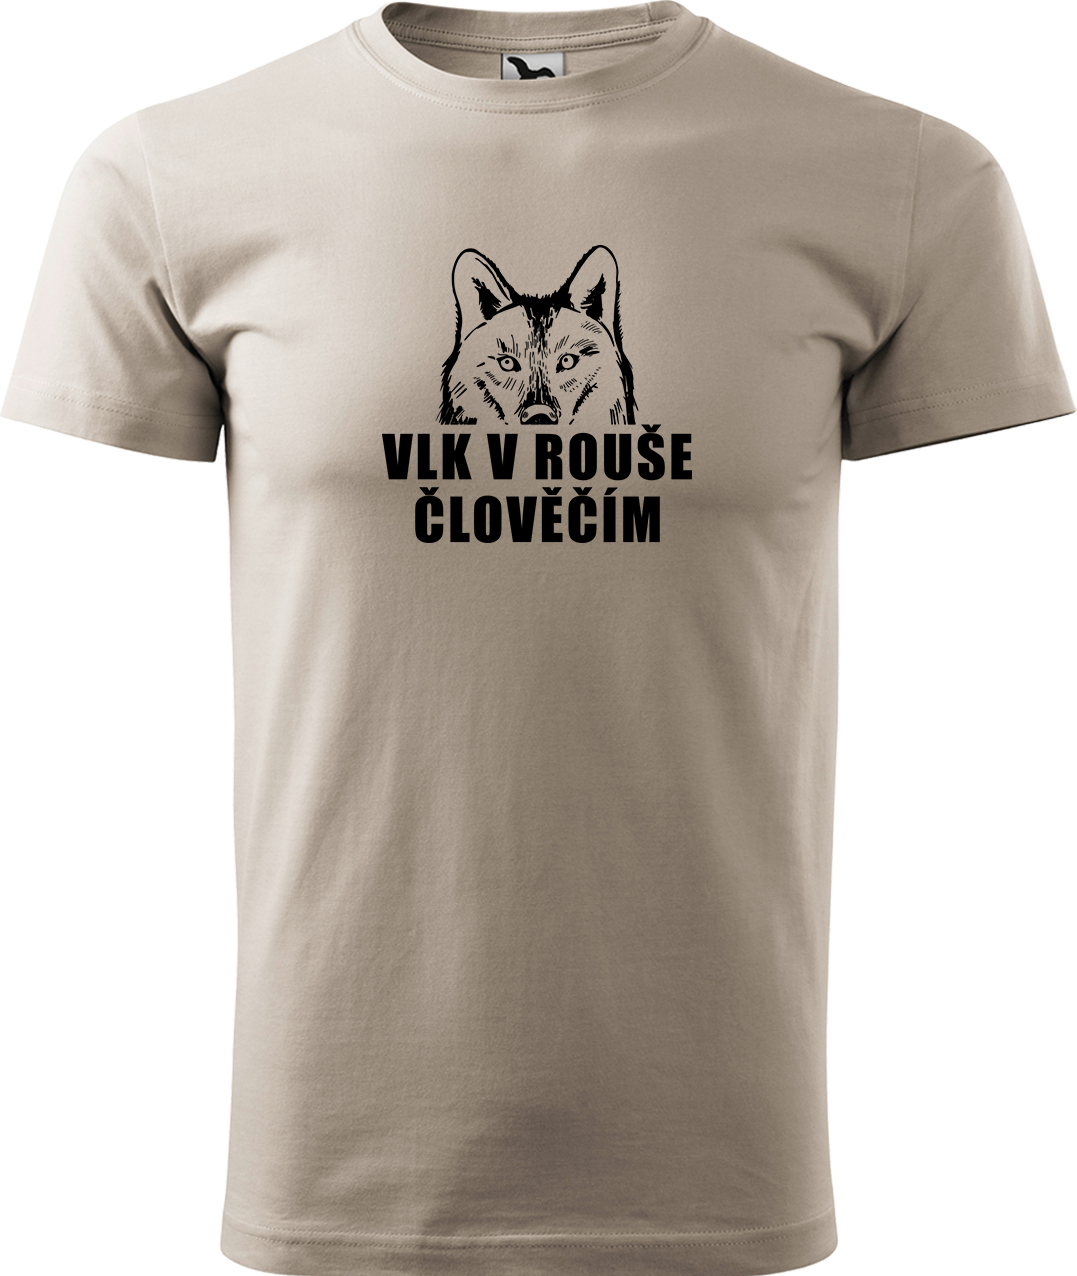 Pánské tričko s vlkem - Vlk v rouše člověčím Velikost: M, Barva: Béžová (51), Střih: pánský